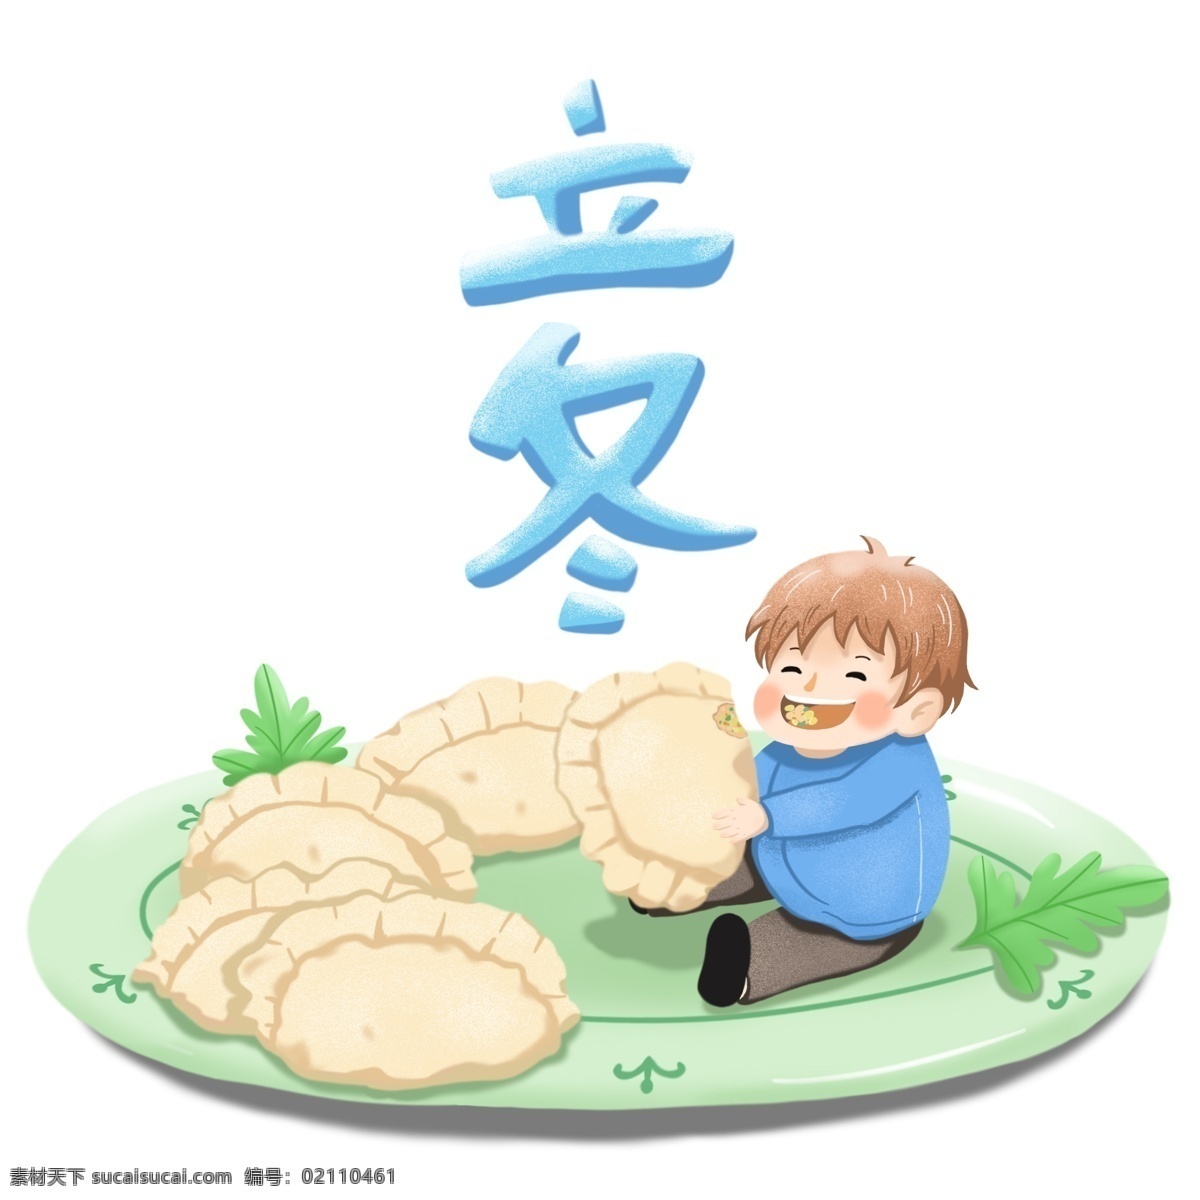 立冬 吃 饺子 可爱 卡通 插画 吃饺子 可爱卡通 免抠图 碟子 小孩 装饰图案